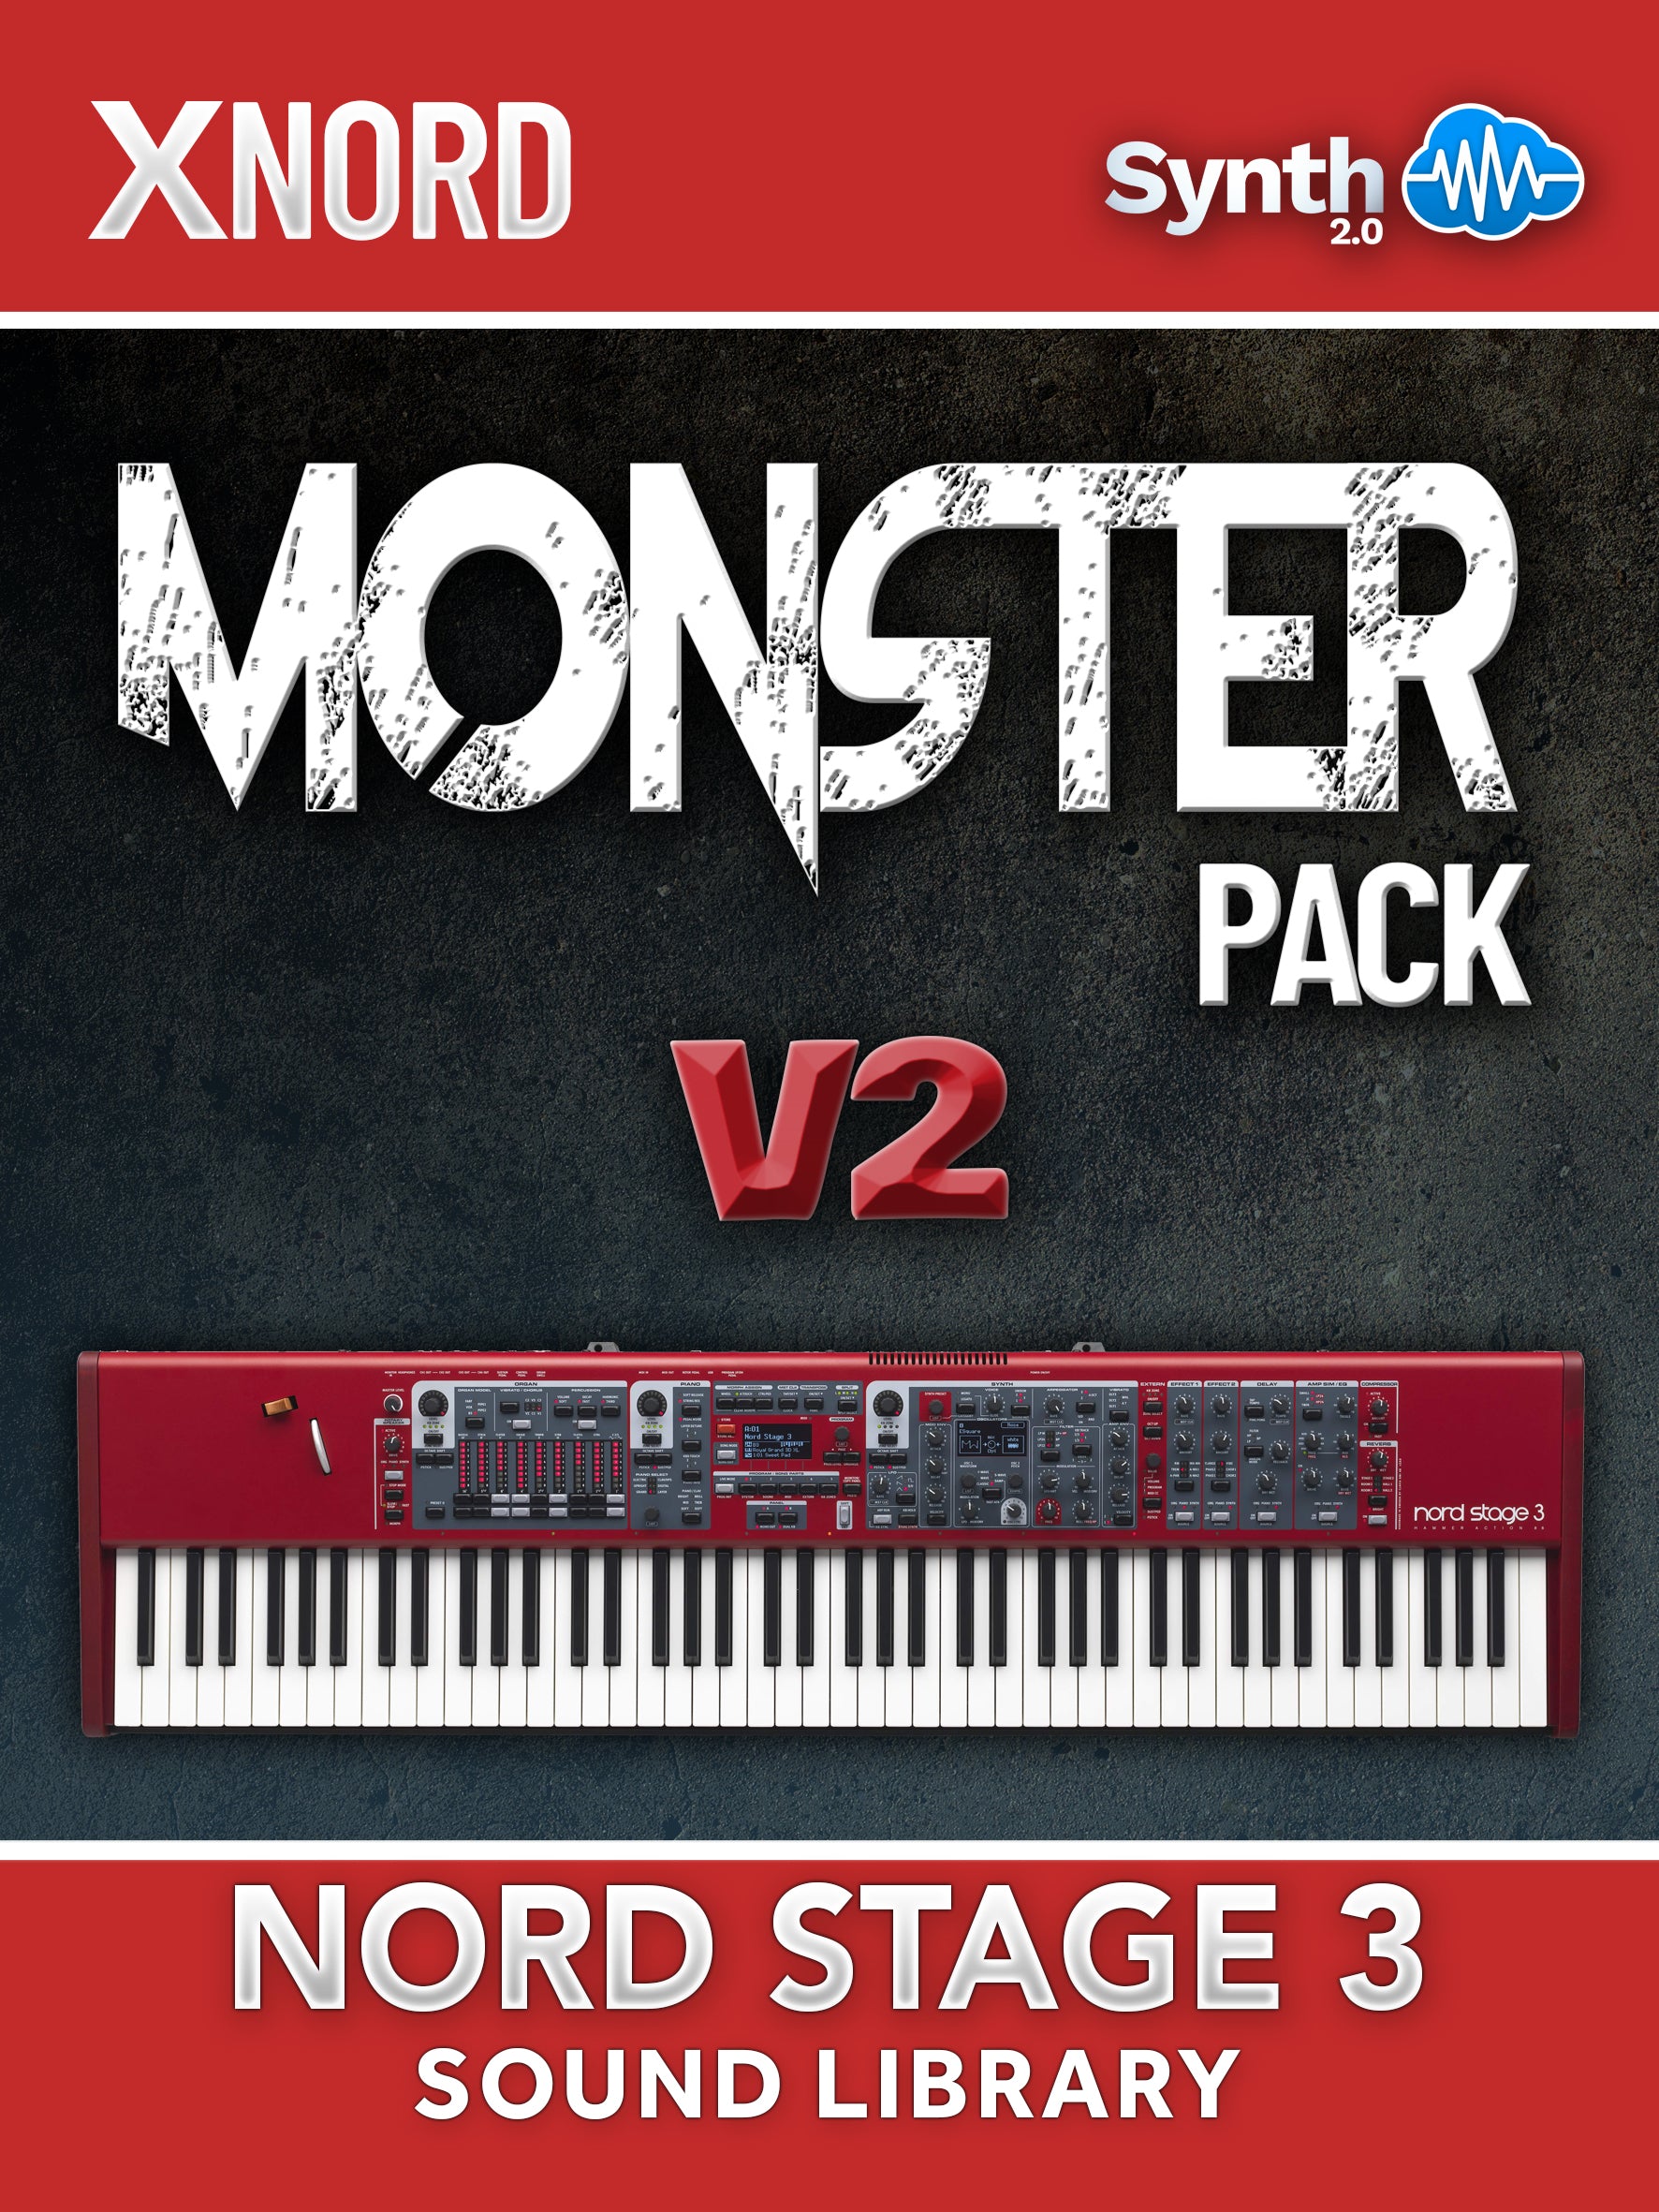 LDX153 - Monster Pack V2 - Nord Stage 3 ( 30 presets )